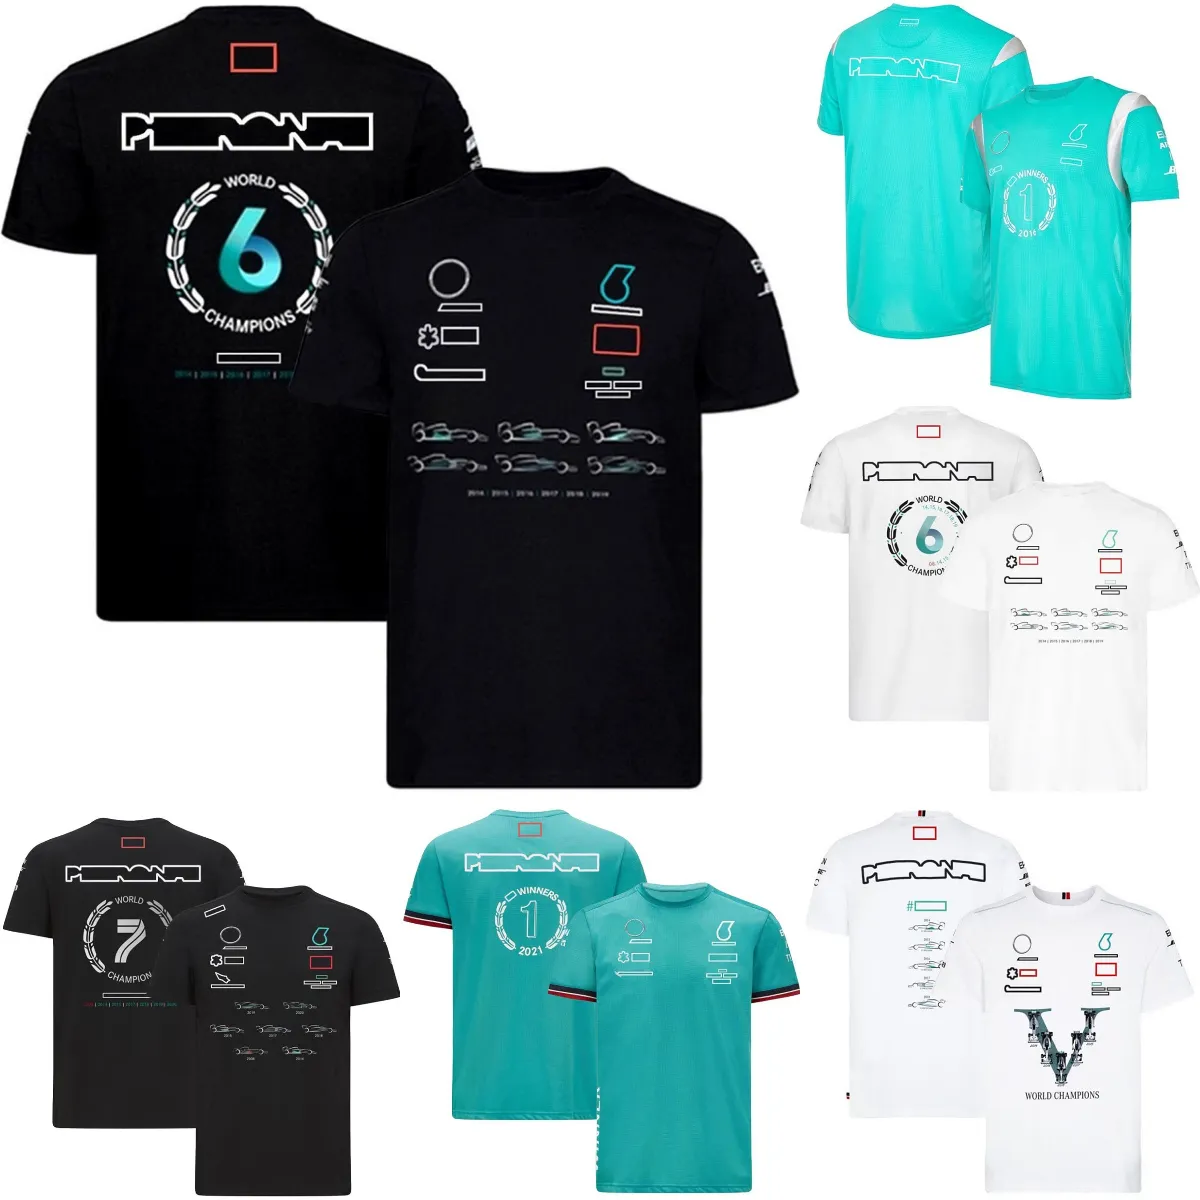 F1 Pilotes CHAMPION DU MONDE T-shirt Formule 1 Équipe De Course T-shirts D'été Respirant Fan De Voiture T-Shirt Hommes Maillot Grande Taille Personnalisé